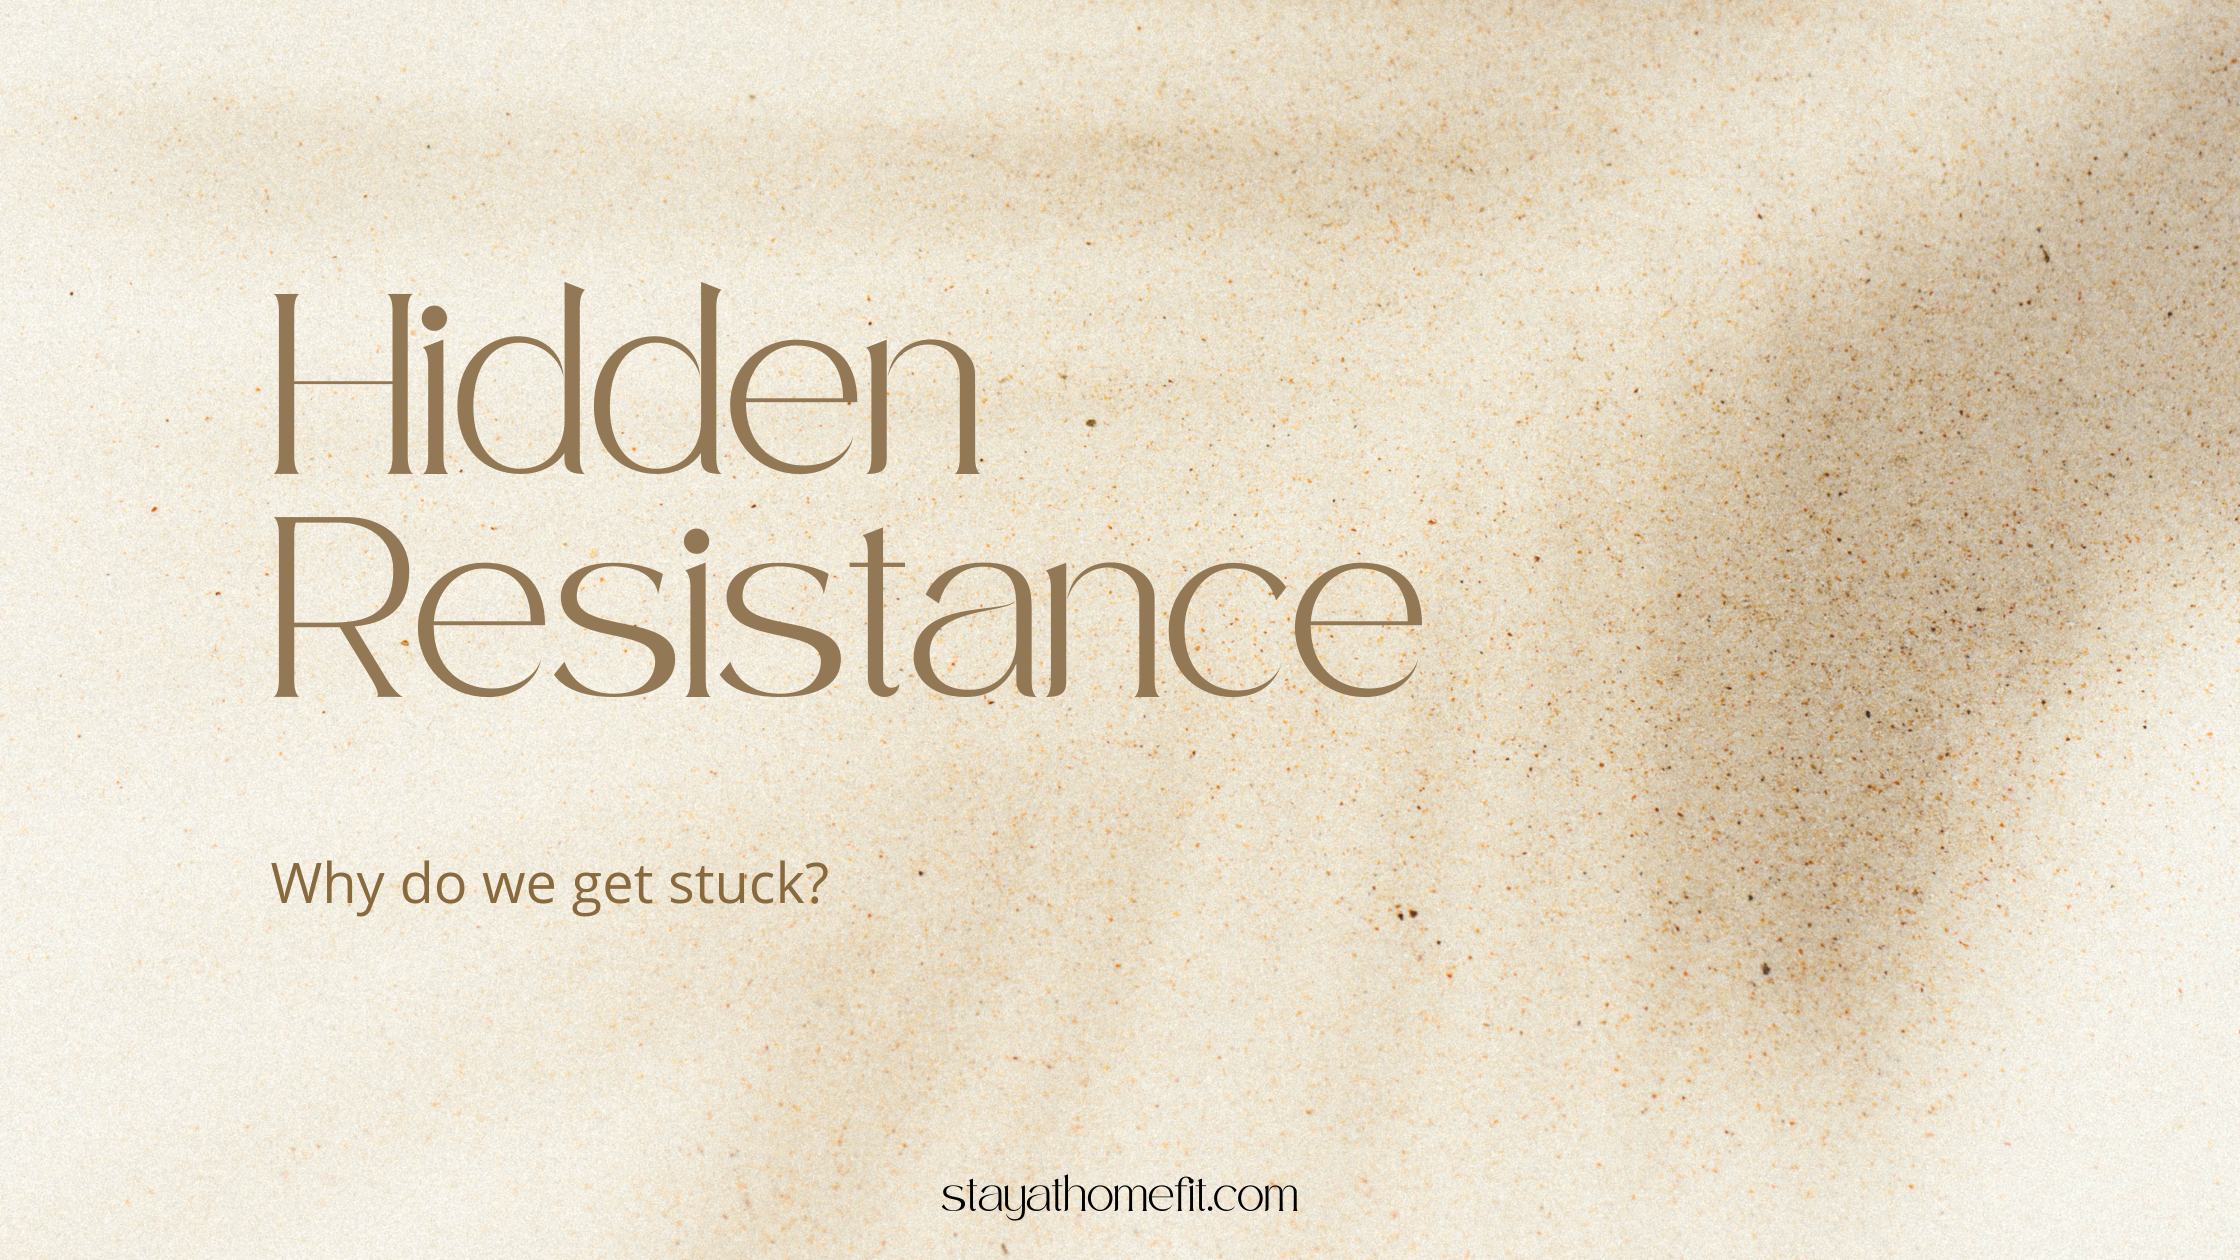 Blog Title: Hidden Resistance